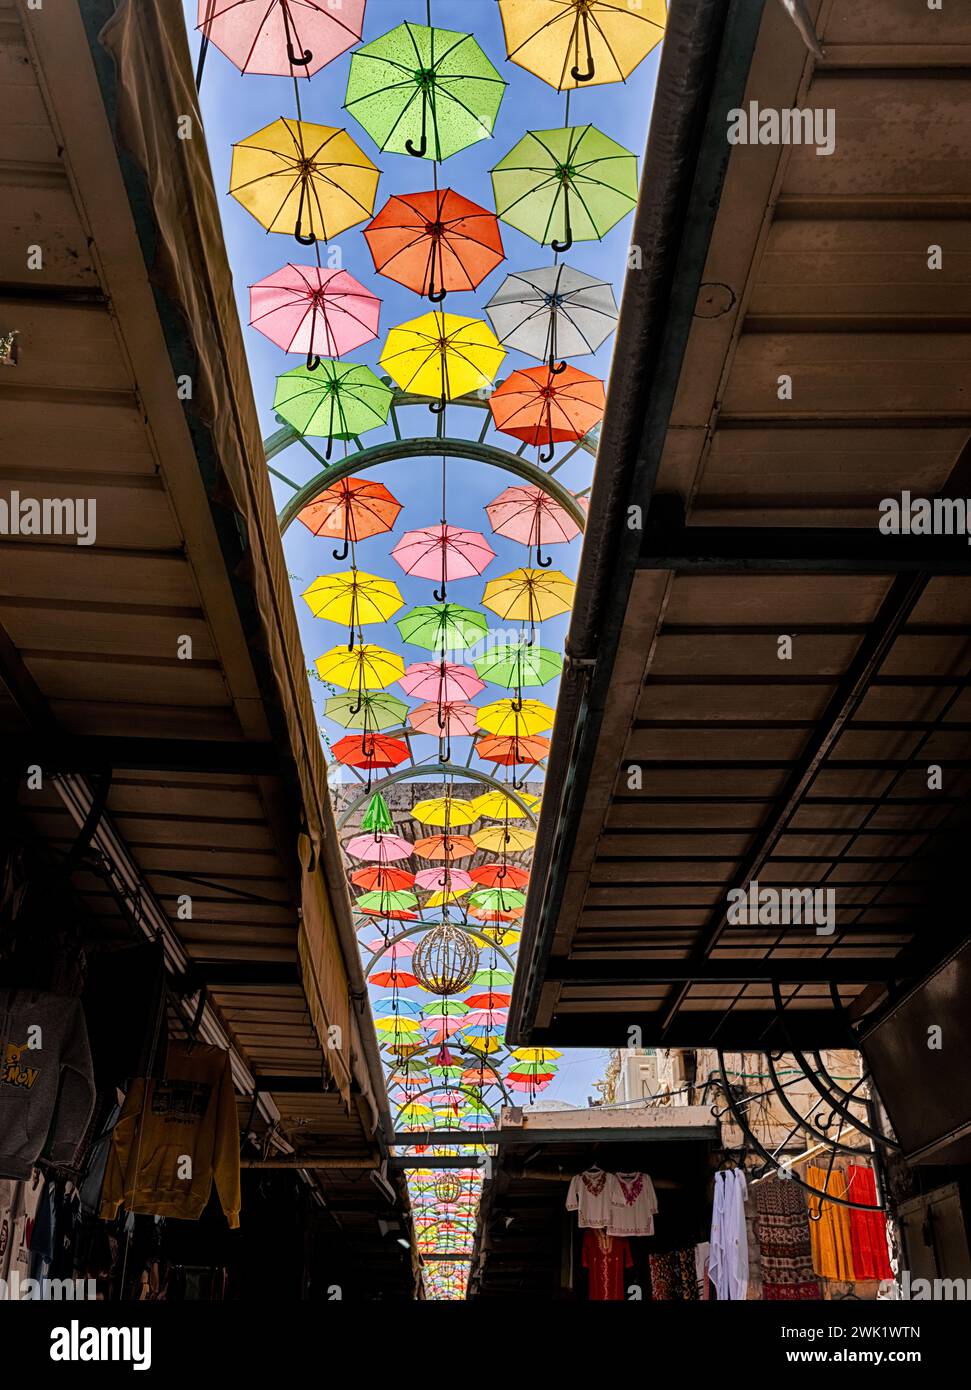 Des centaines de parapluies décoratifs aux couleurs vives sont suspendus au-dessus de l'une des rues étroites de la vieille ville de Jérusalem. Banque D'Images